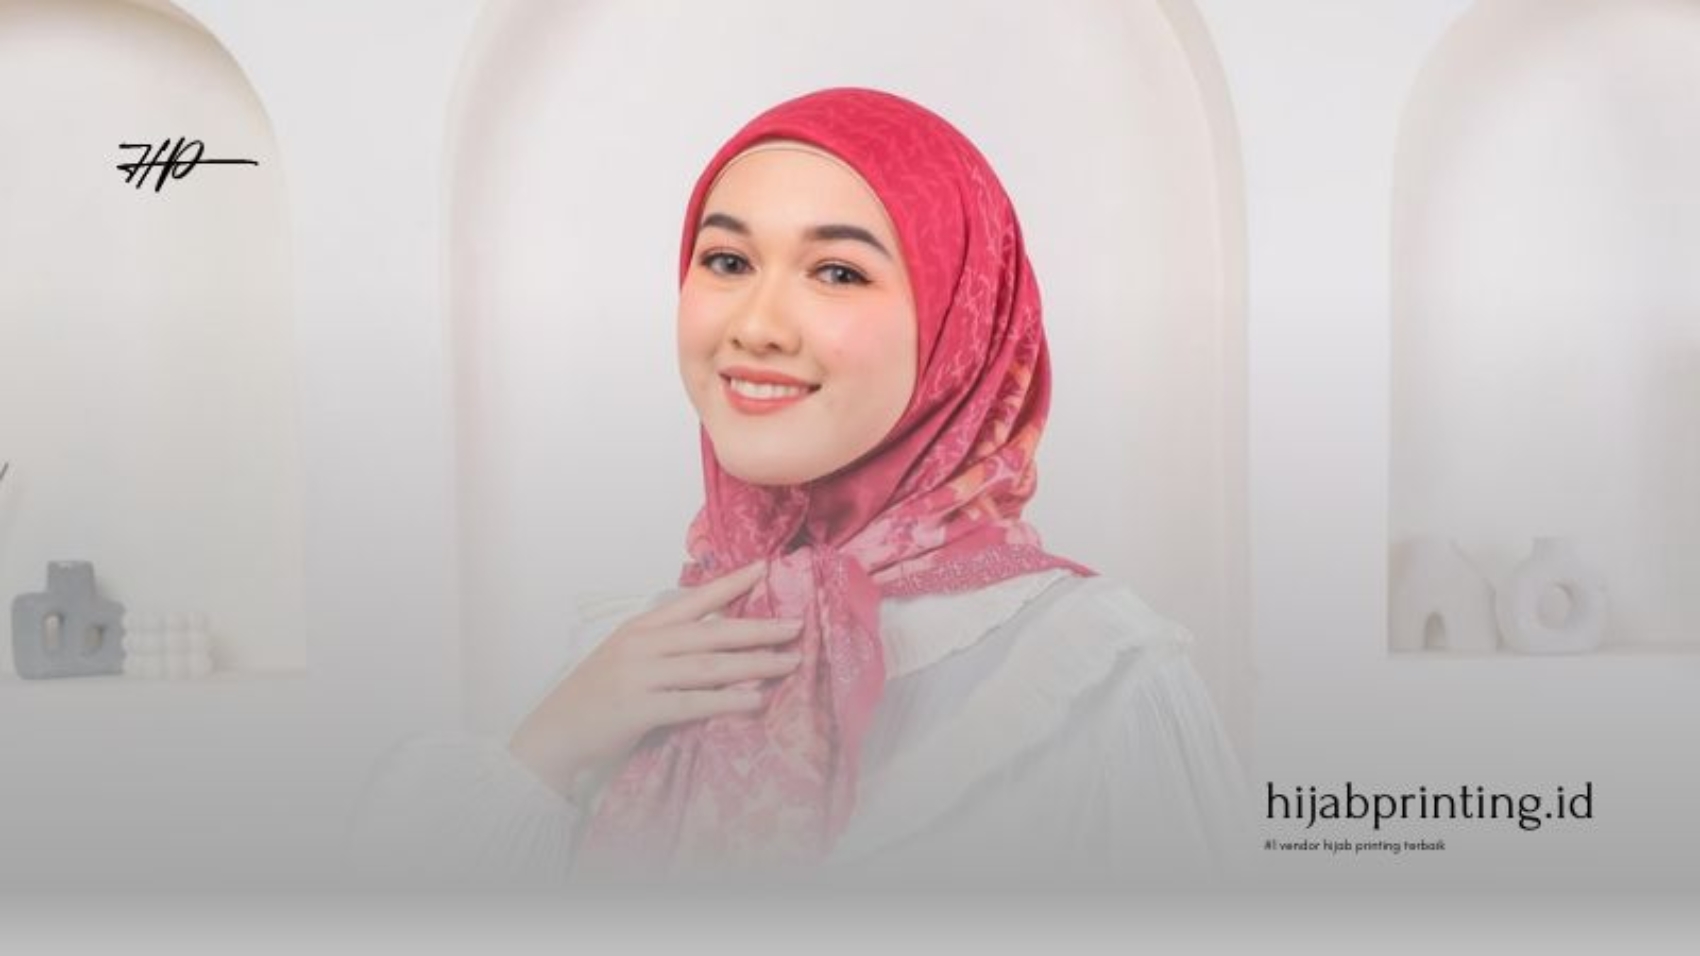 Panduan Lengkap Memulai Usaha Hijab Printing: Tips, Trik, dan Inspirasi Desain untuk Usaha Hijab Printing